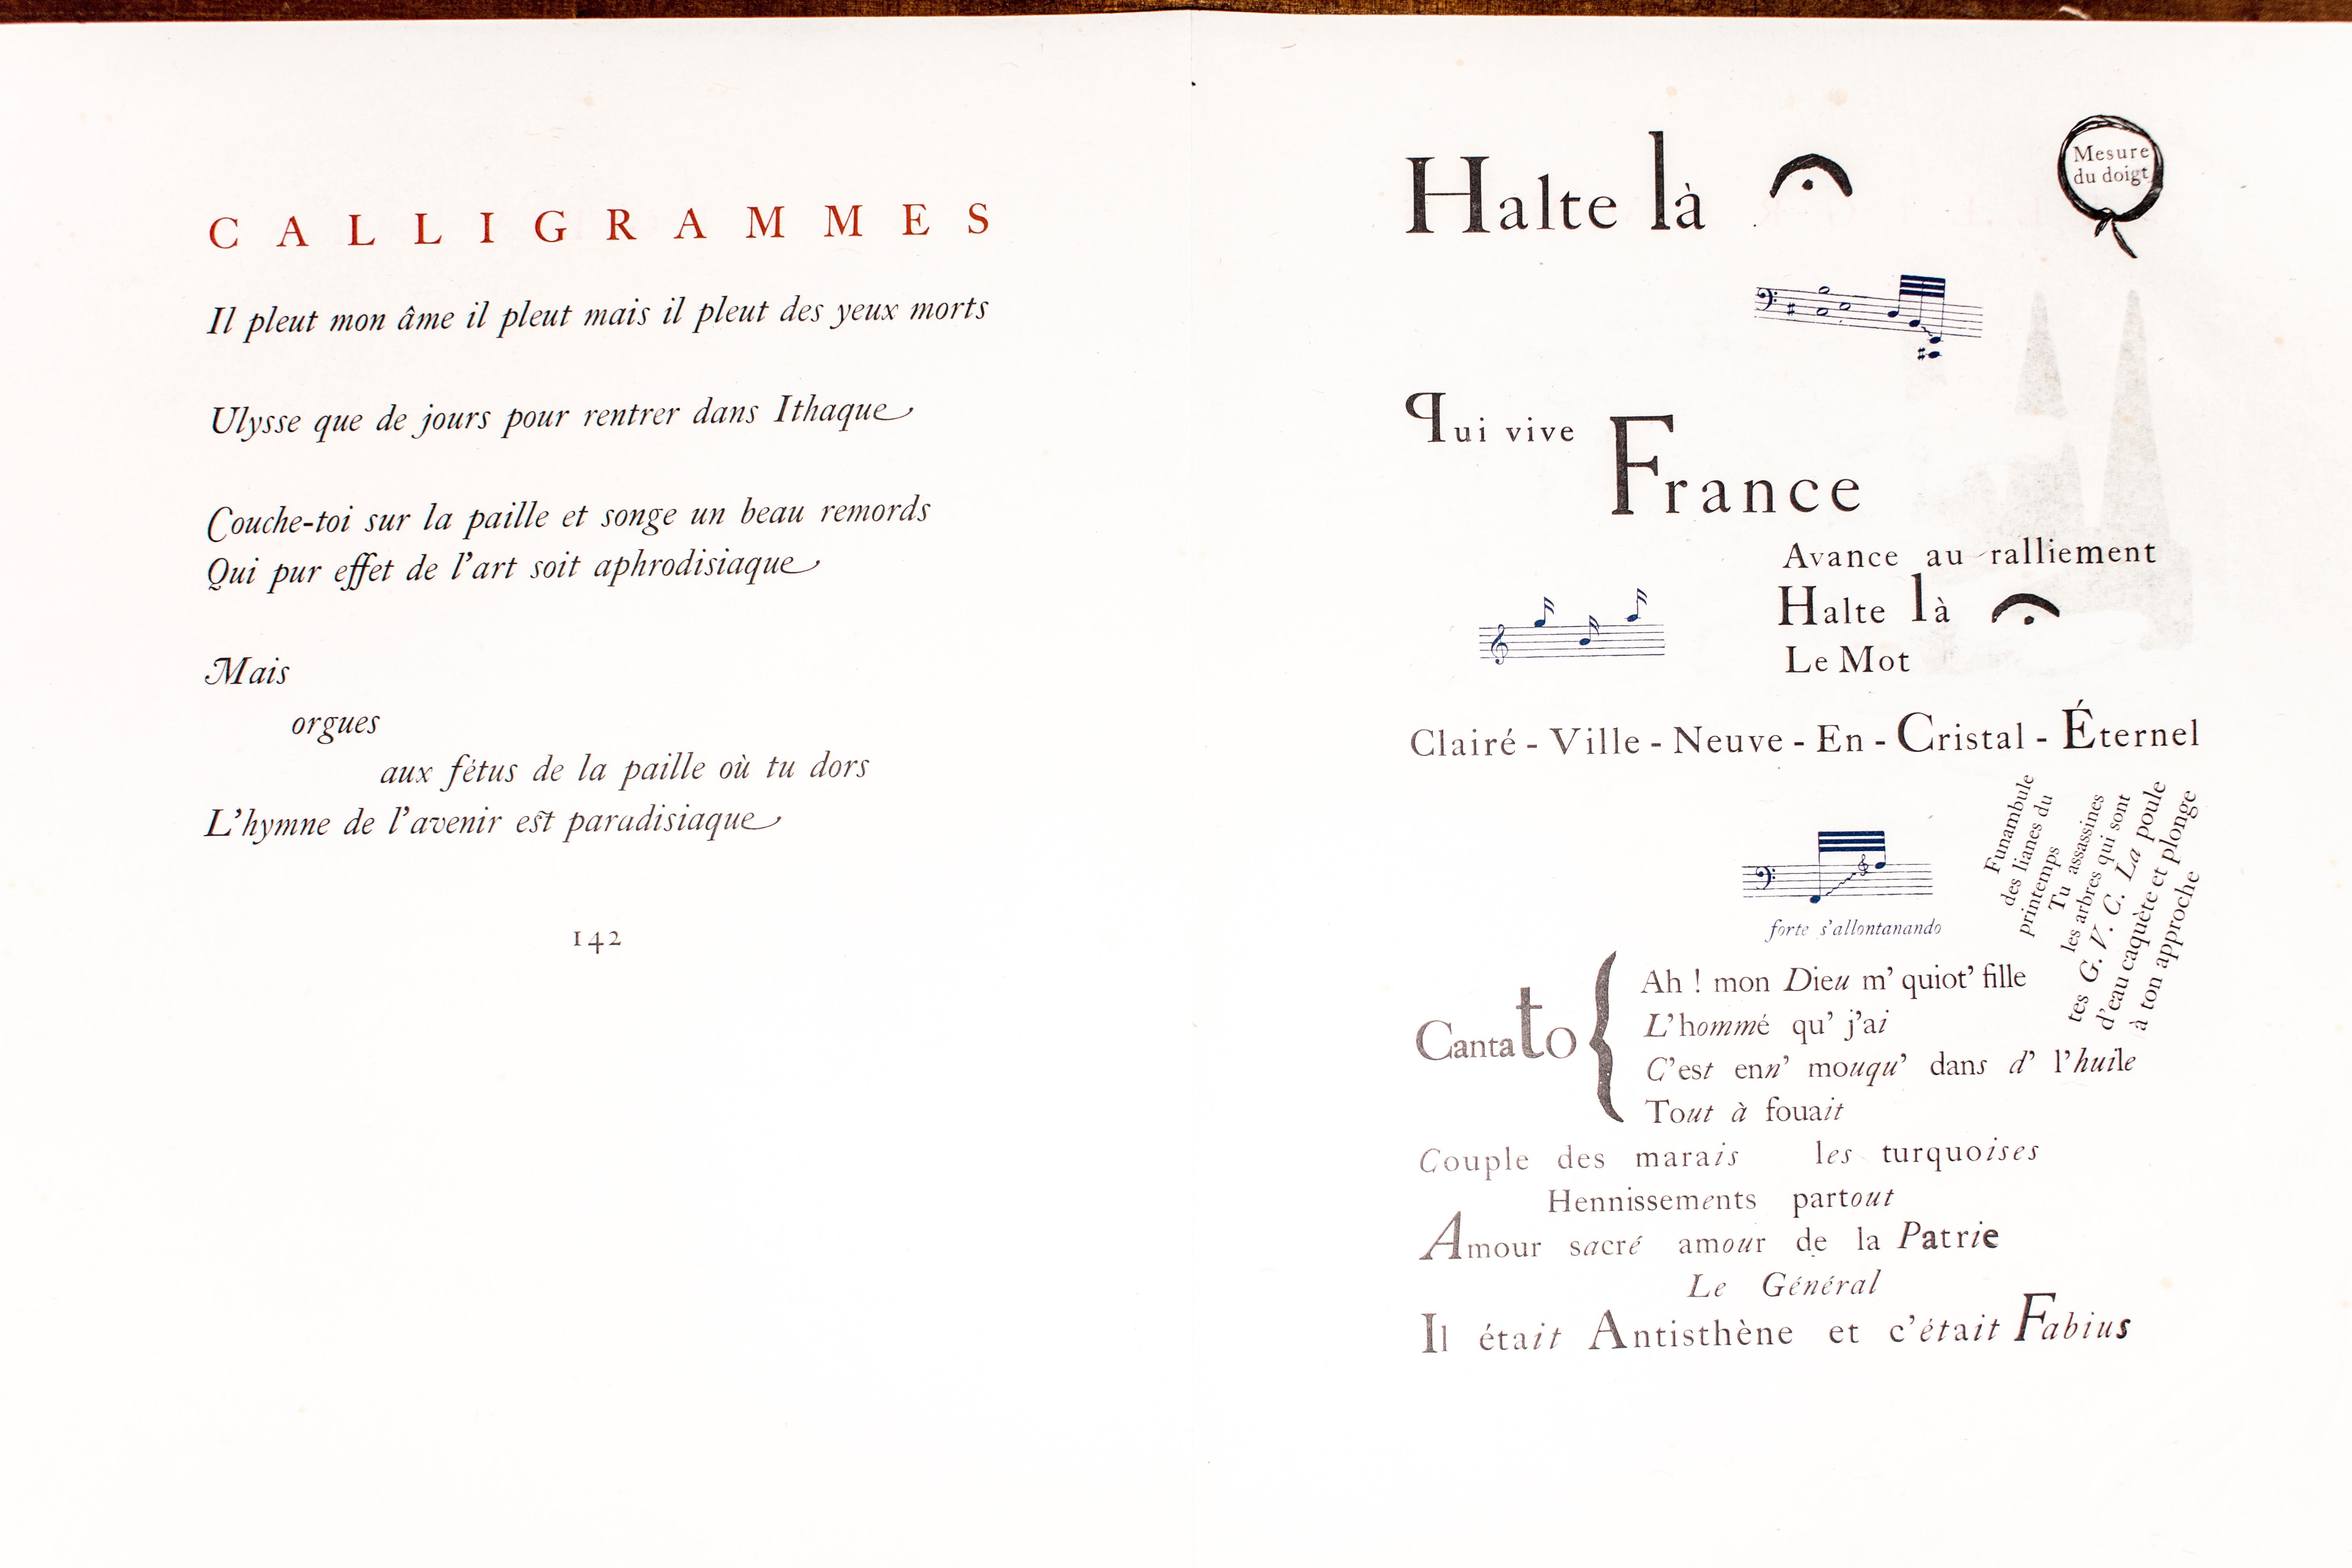 Calligrammes - Rare Book illustrated by Giorgio De Chirico - 1930 For Sale 4